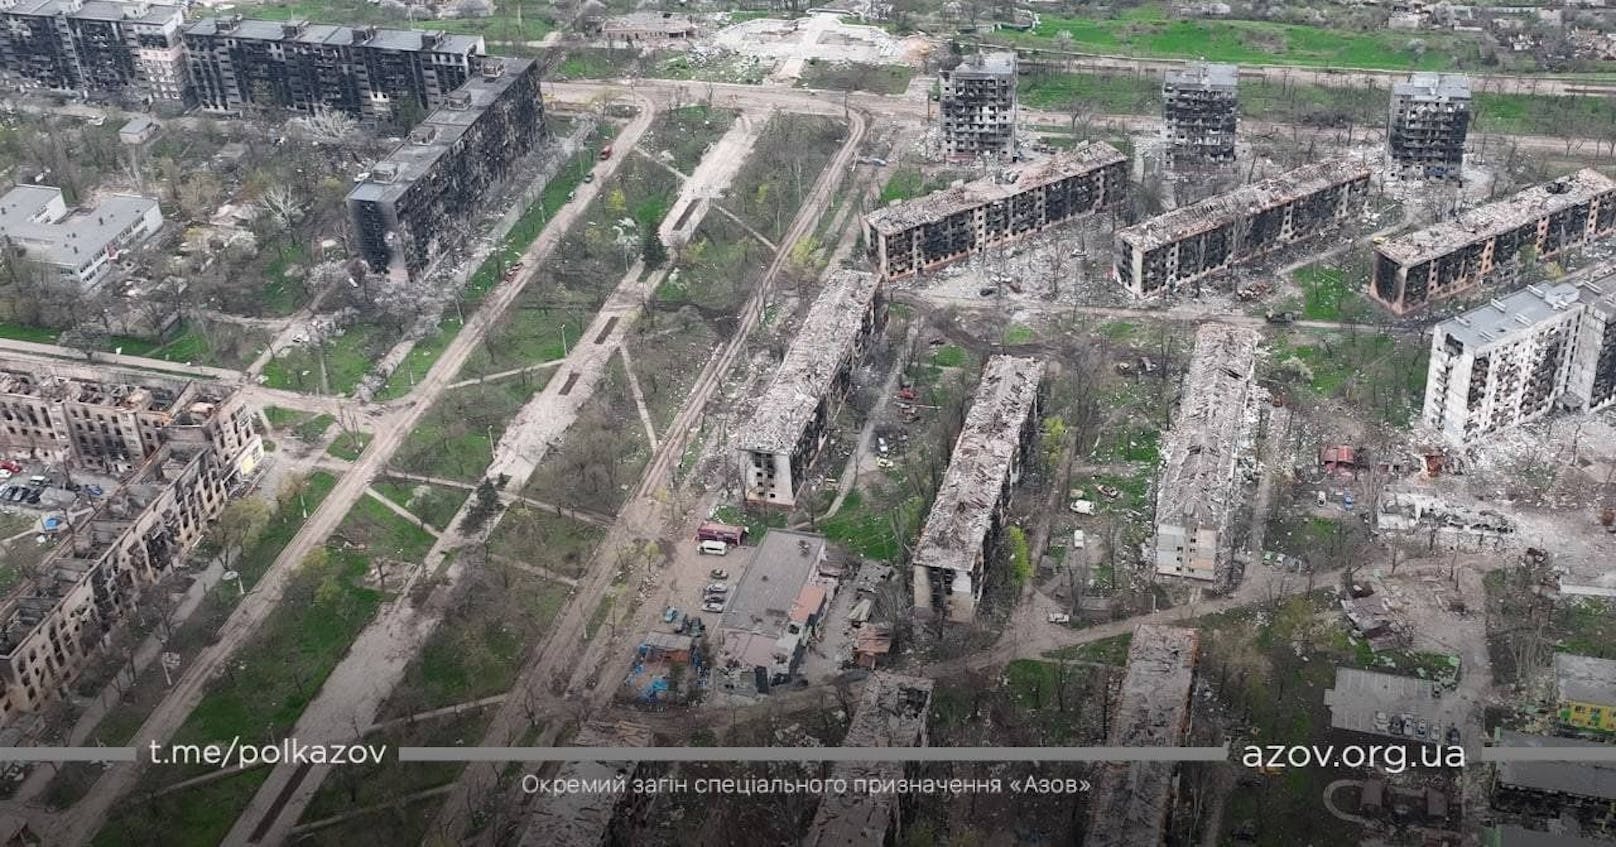 Die Lage in der Hafenstadt Mariupol spitzt sich unterdessen weiter zu. Bilder zeigen das gewaltige Ausmaß der Zerstörung.